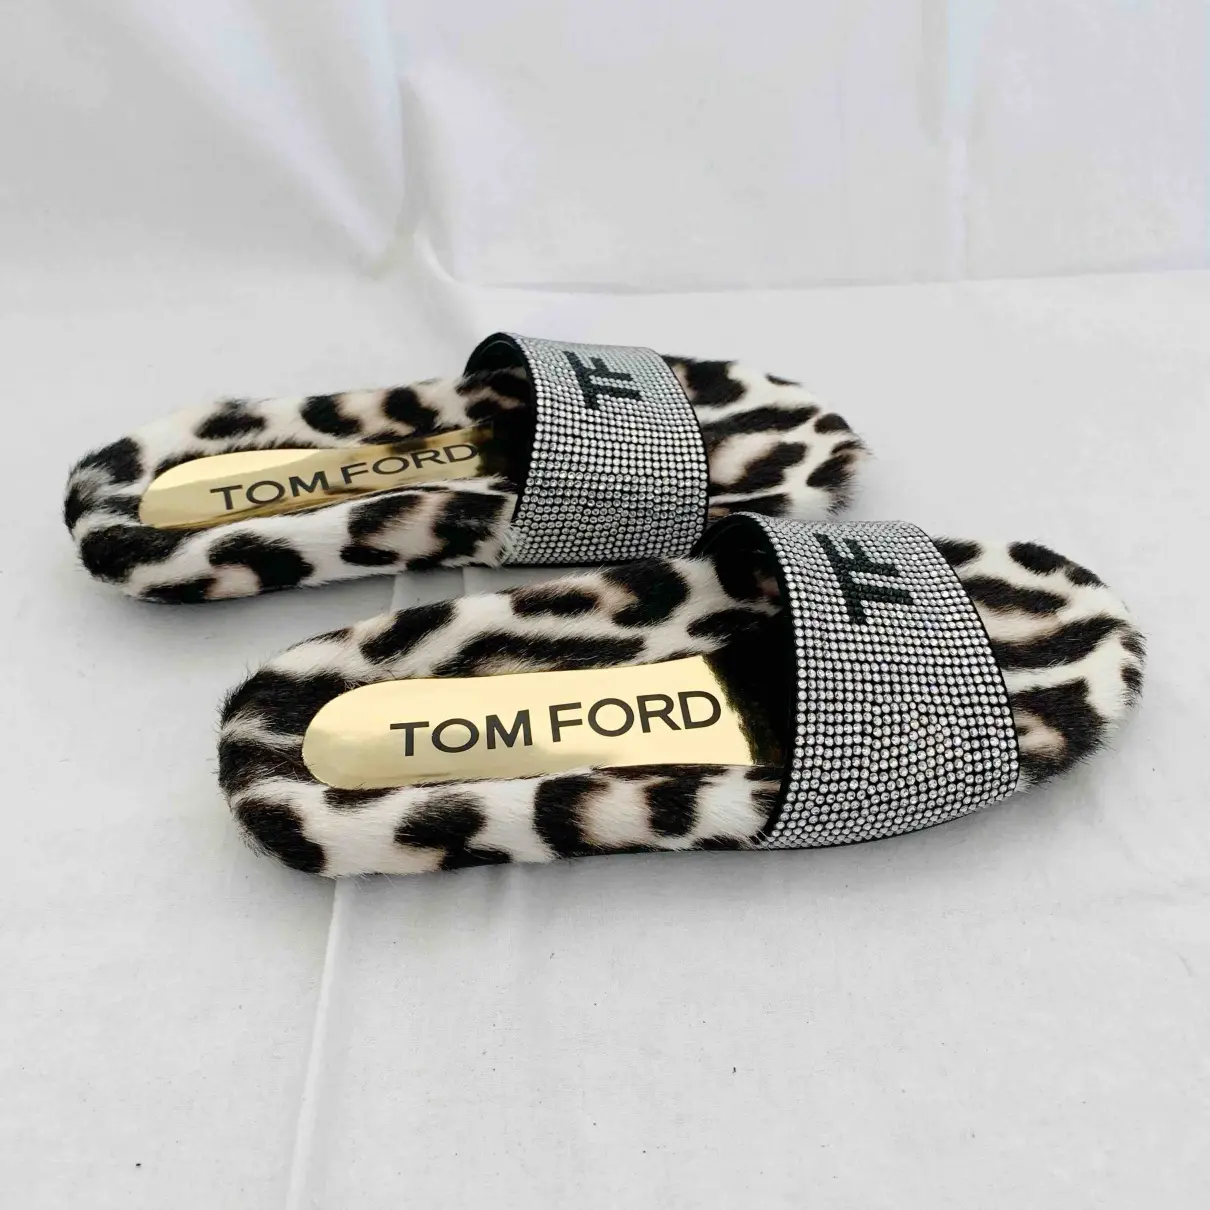 Buy Tom Ford Glitter flip flops online